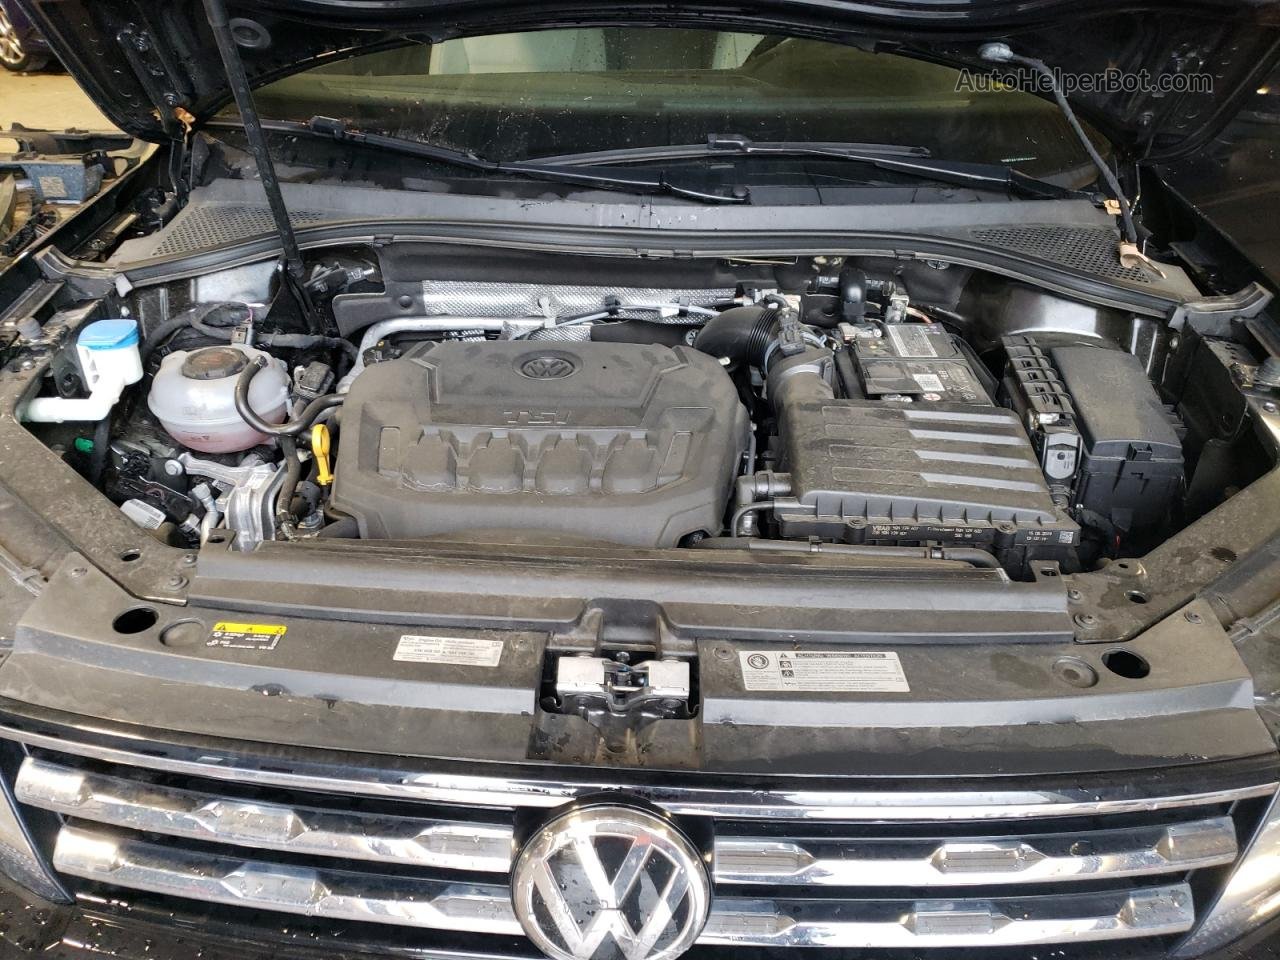 2019 Volkswagen Tiguan Se Black vin: 3VV3B7AX1KM159493